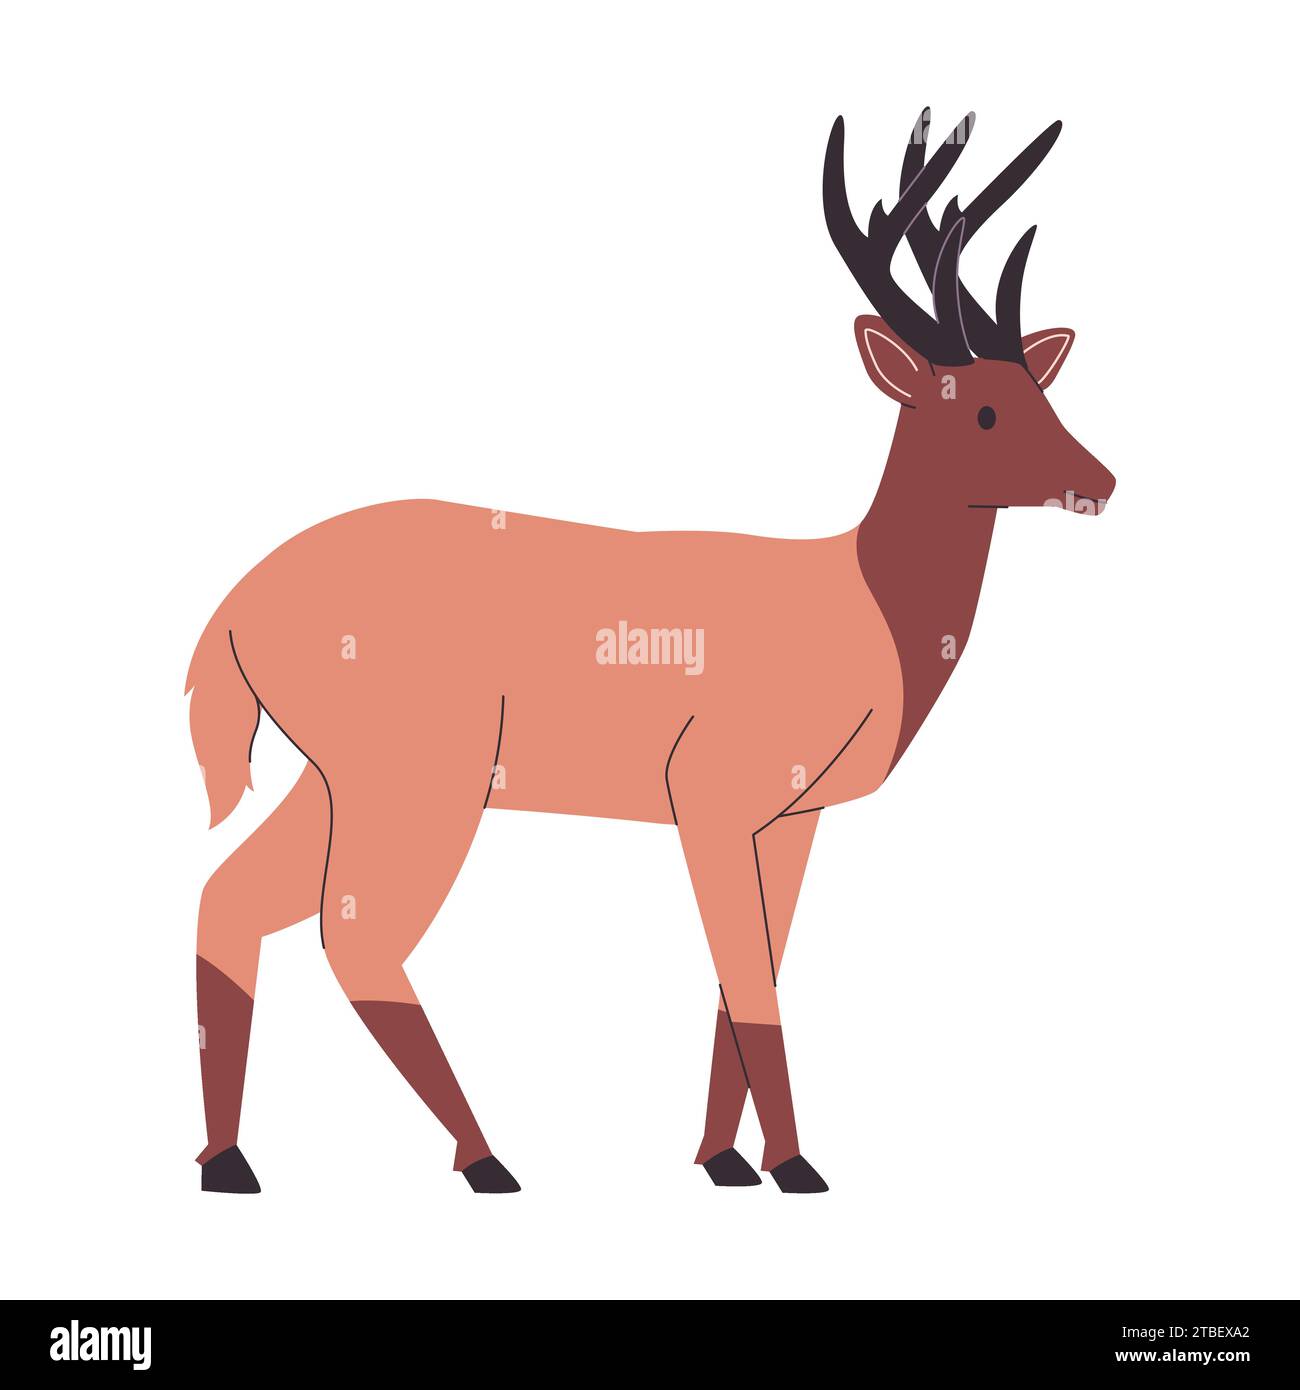 Braune Farbe felsiger Bergelch oder Hirsch wildes Naturtier mit großen Hörnern Säugetierfresser Kreatur Stock Vektor